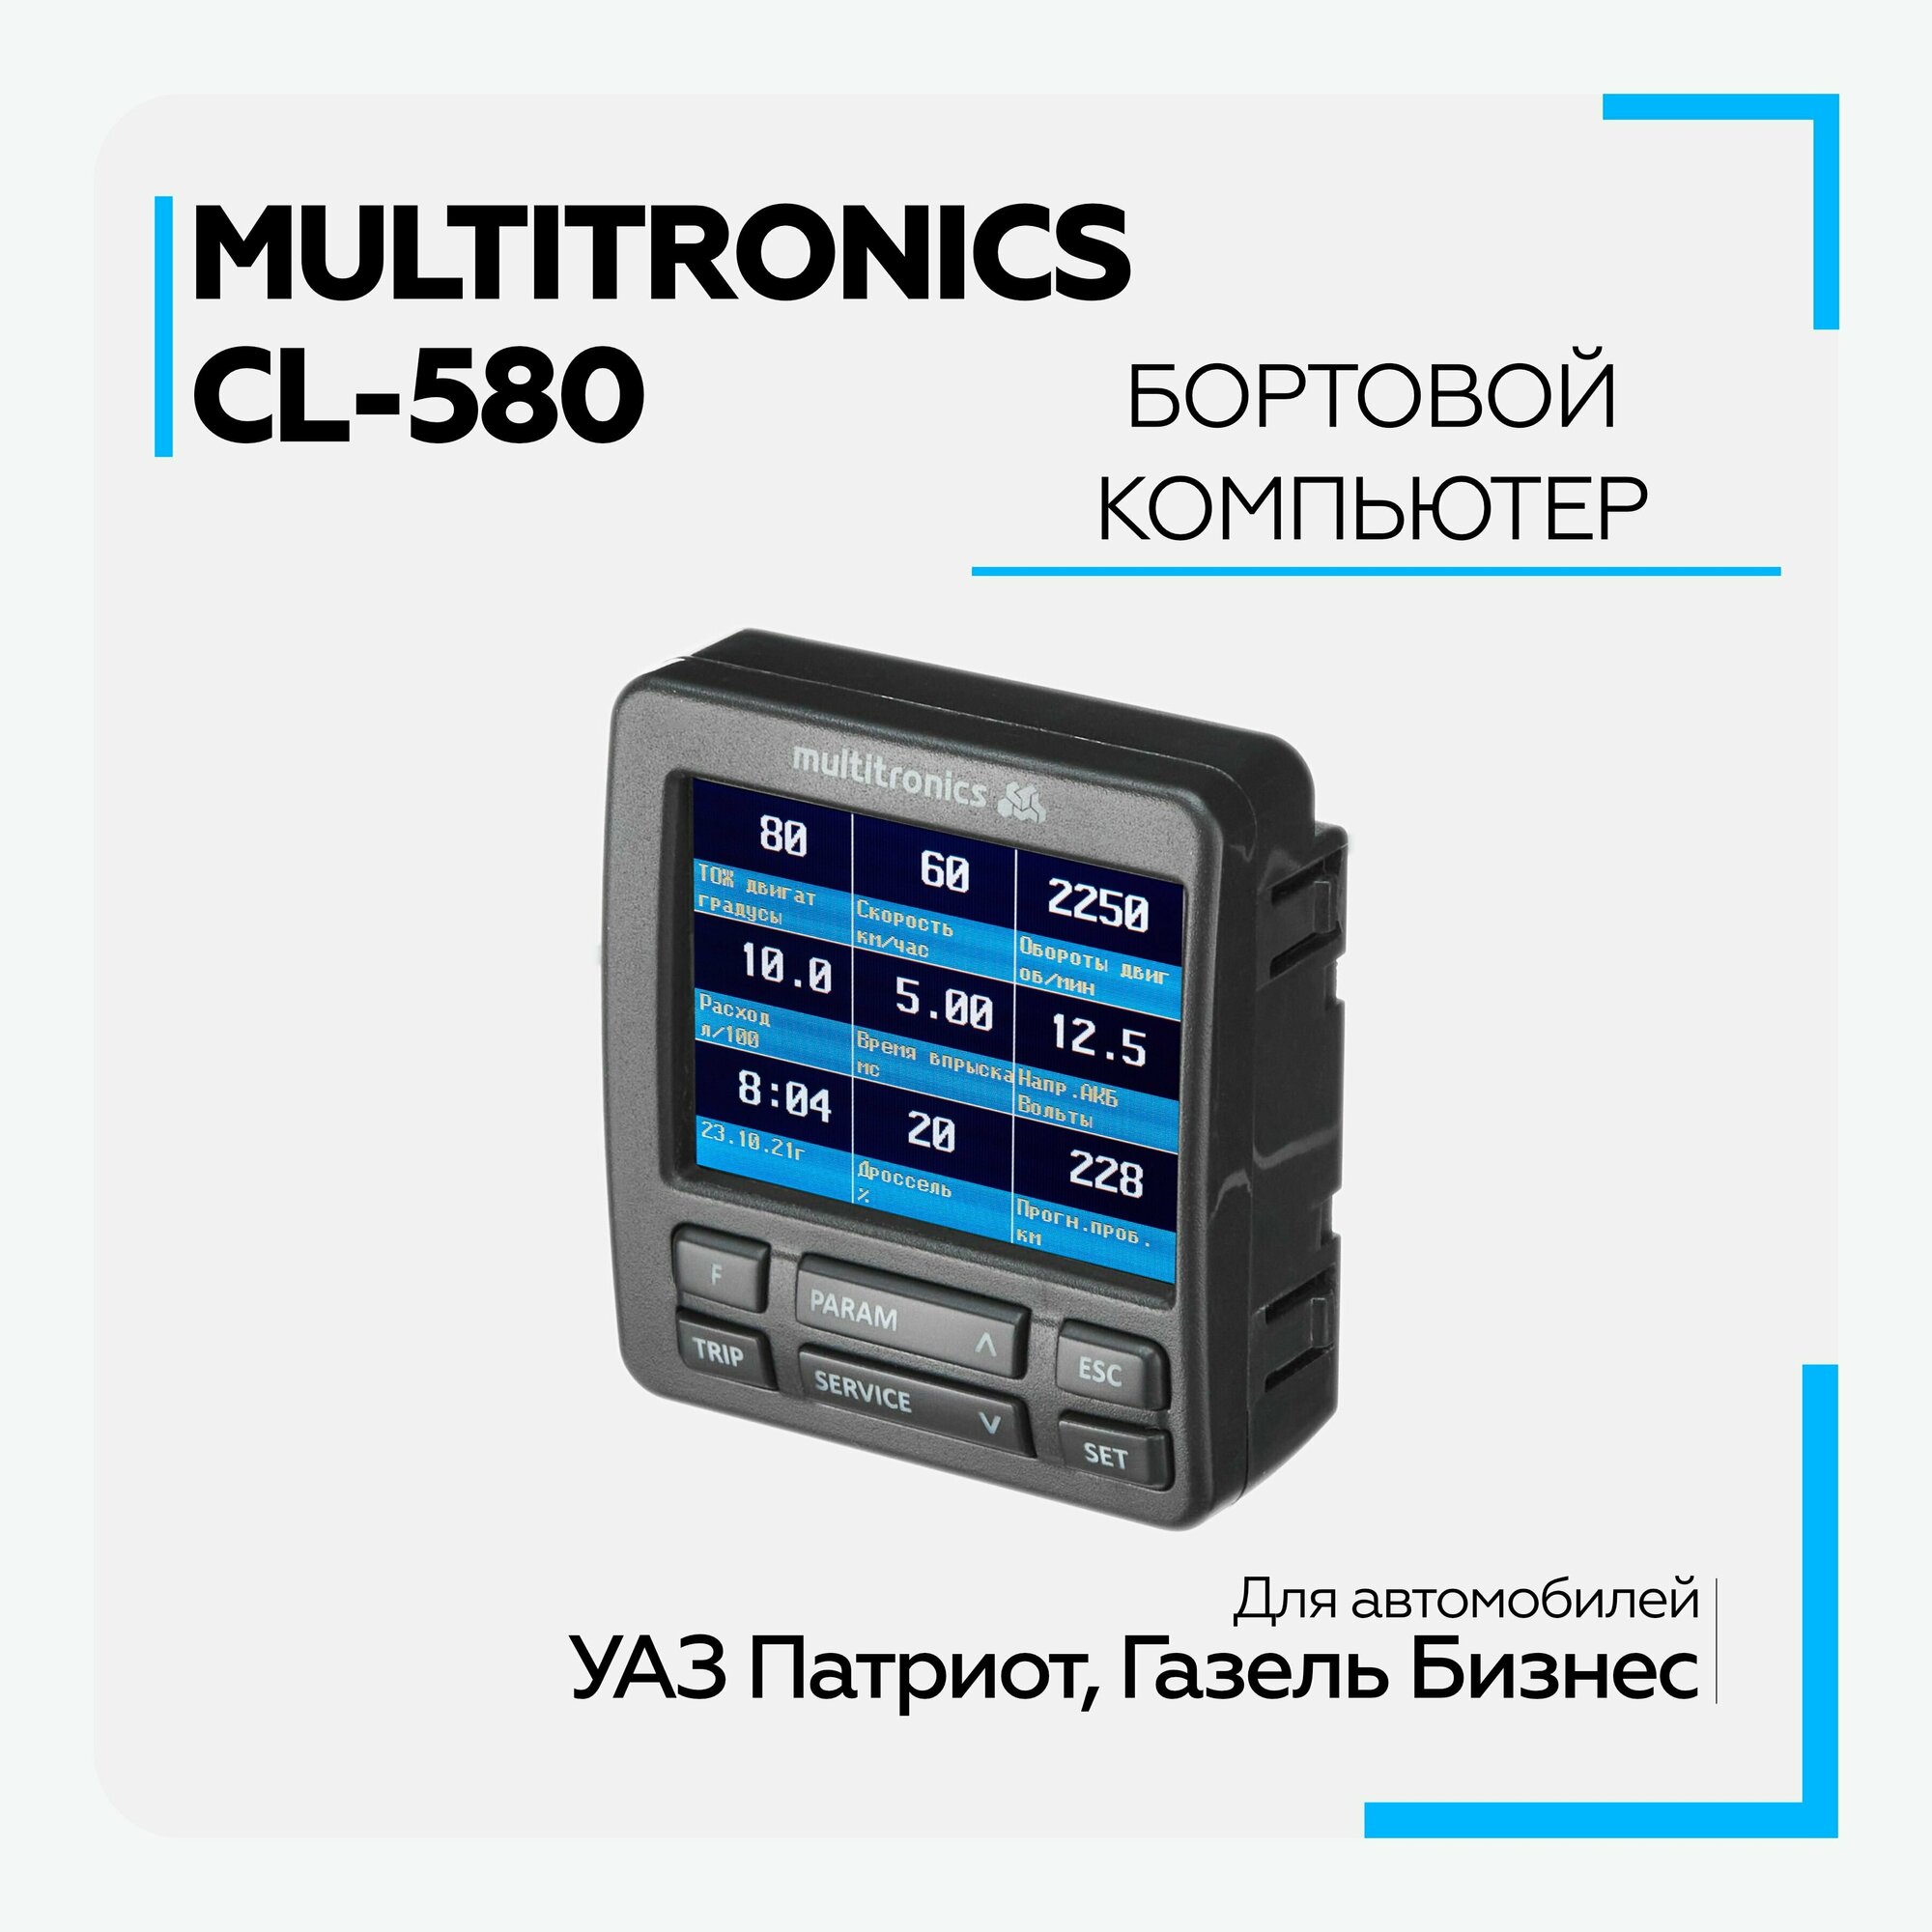 Бортовой компьютер Multitronics CL-580